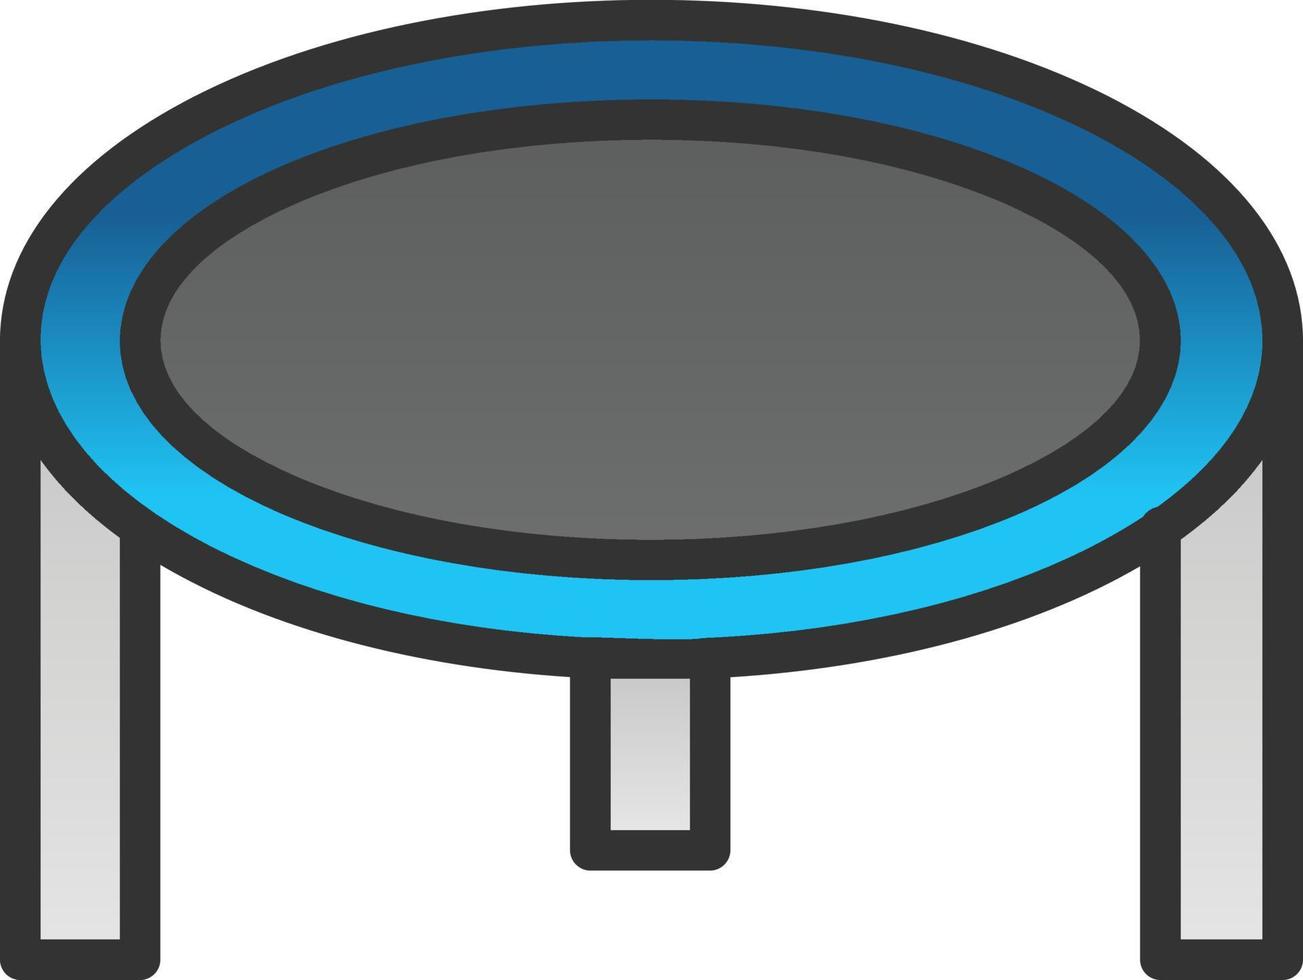 trampolino vettore icona design